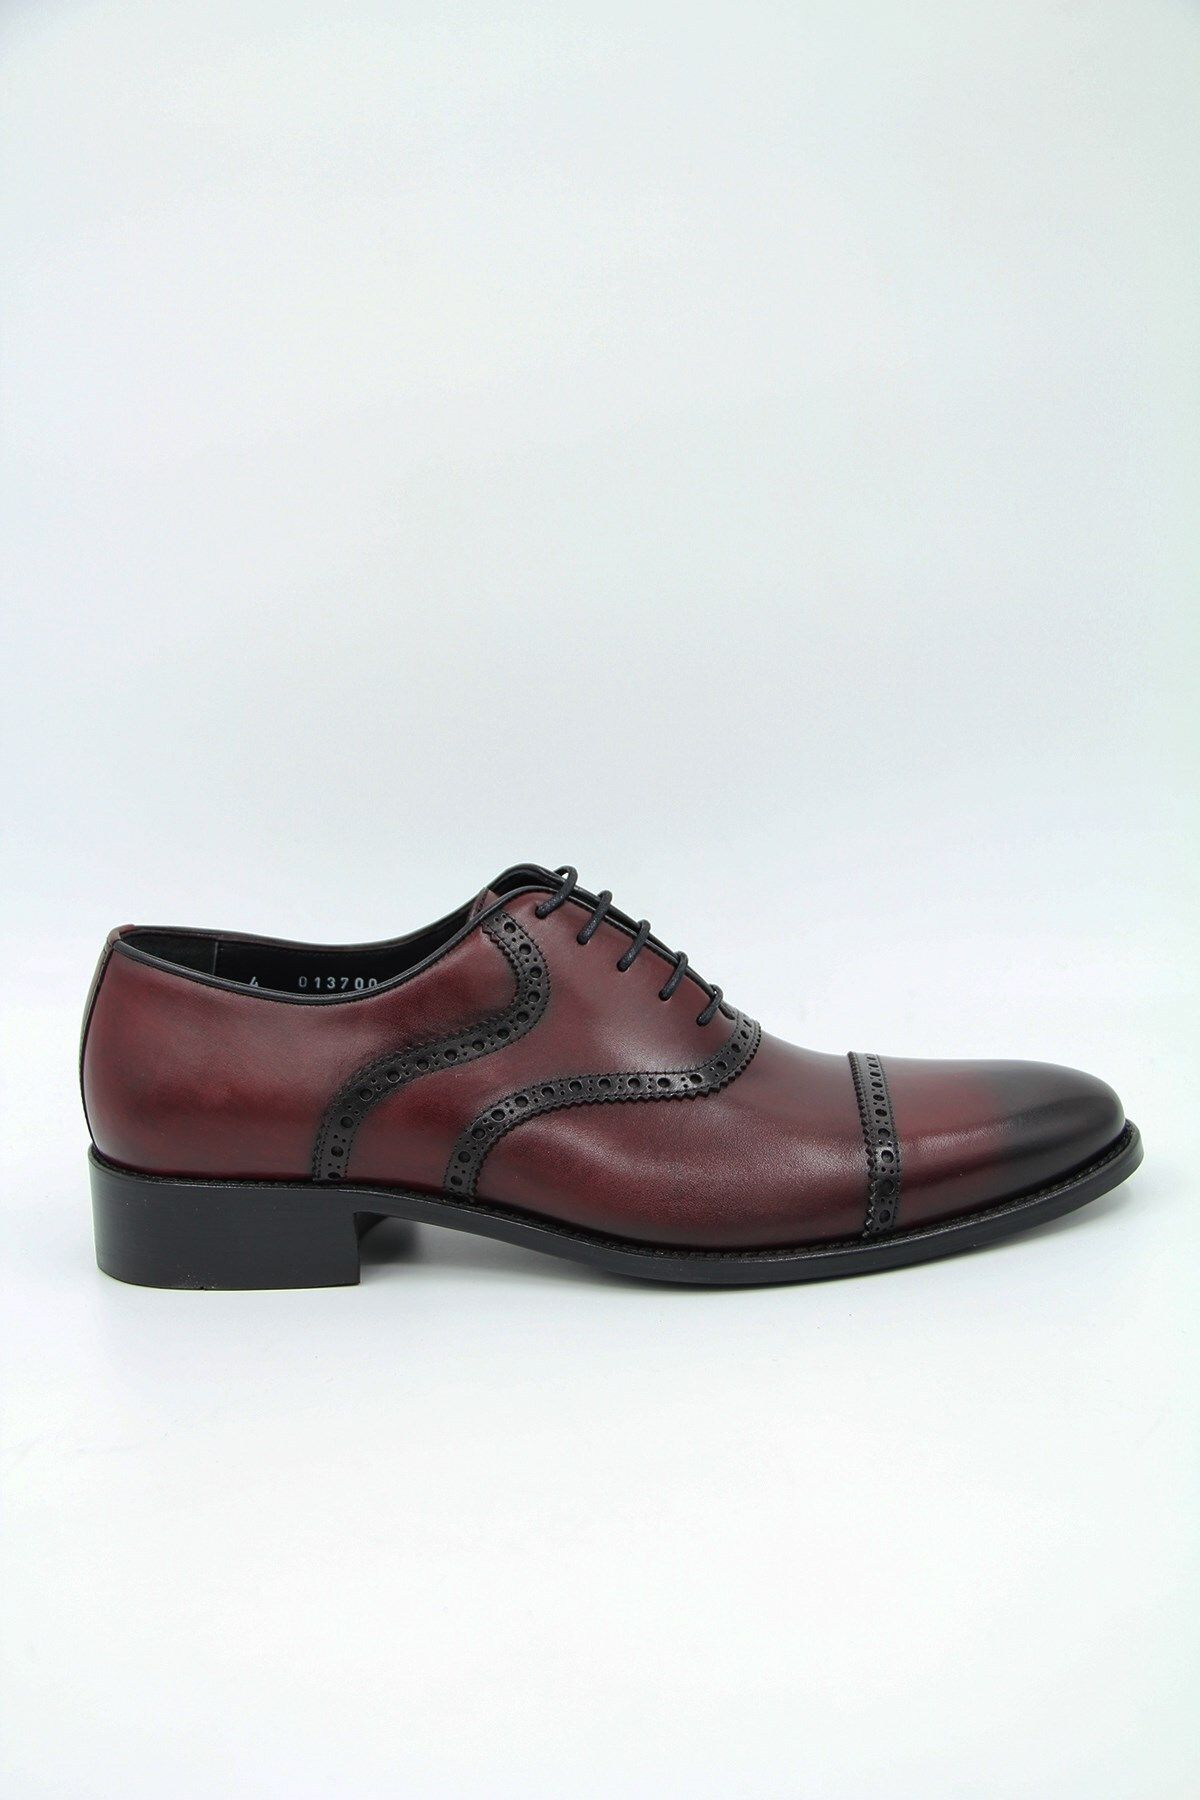 OGGI 013700-4 Erkek Klasik Ayakkabı - Bordo